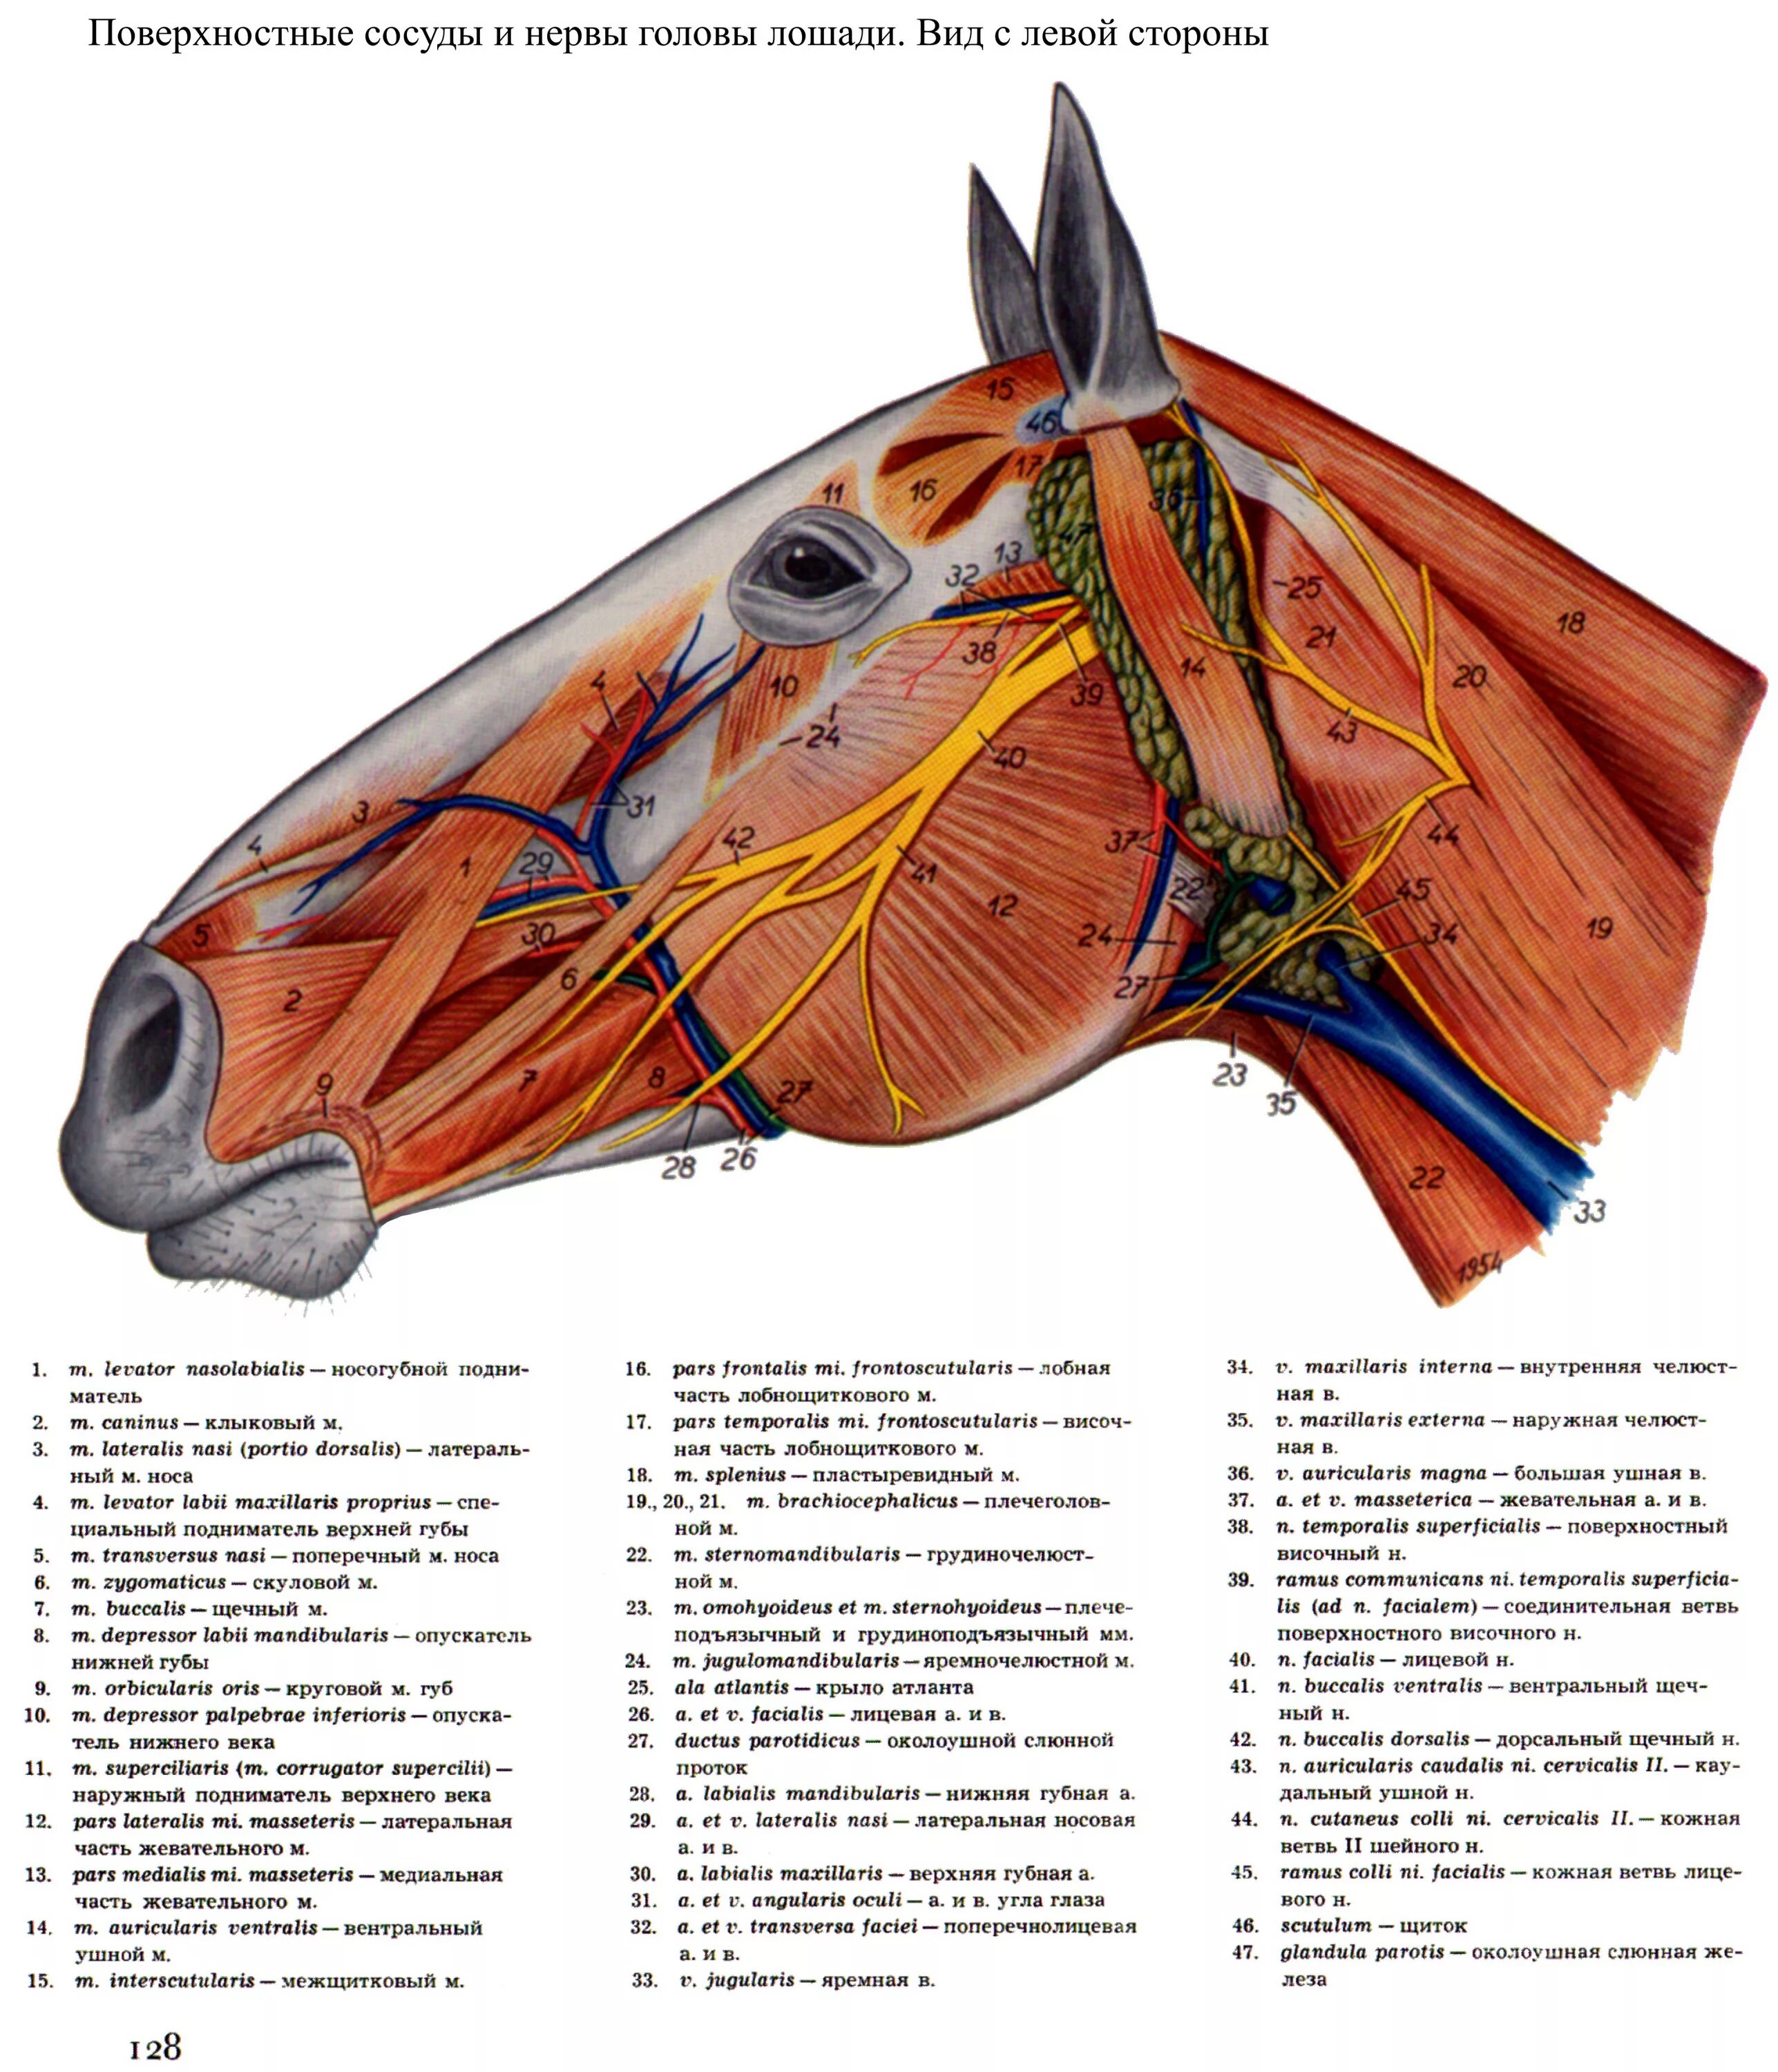 Попеско атлас анатомии домашних животных. Поверхностные кровеносные сосуды и нервы головы лошади. Анатомия лошади Ветеринария мышцы. Поверхностные мышцы лошади анатомия. Артерии и вены животных